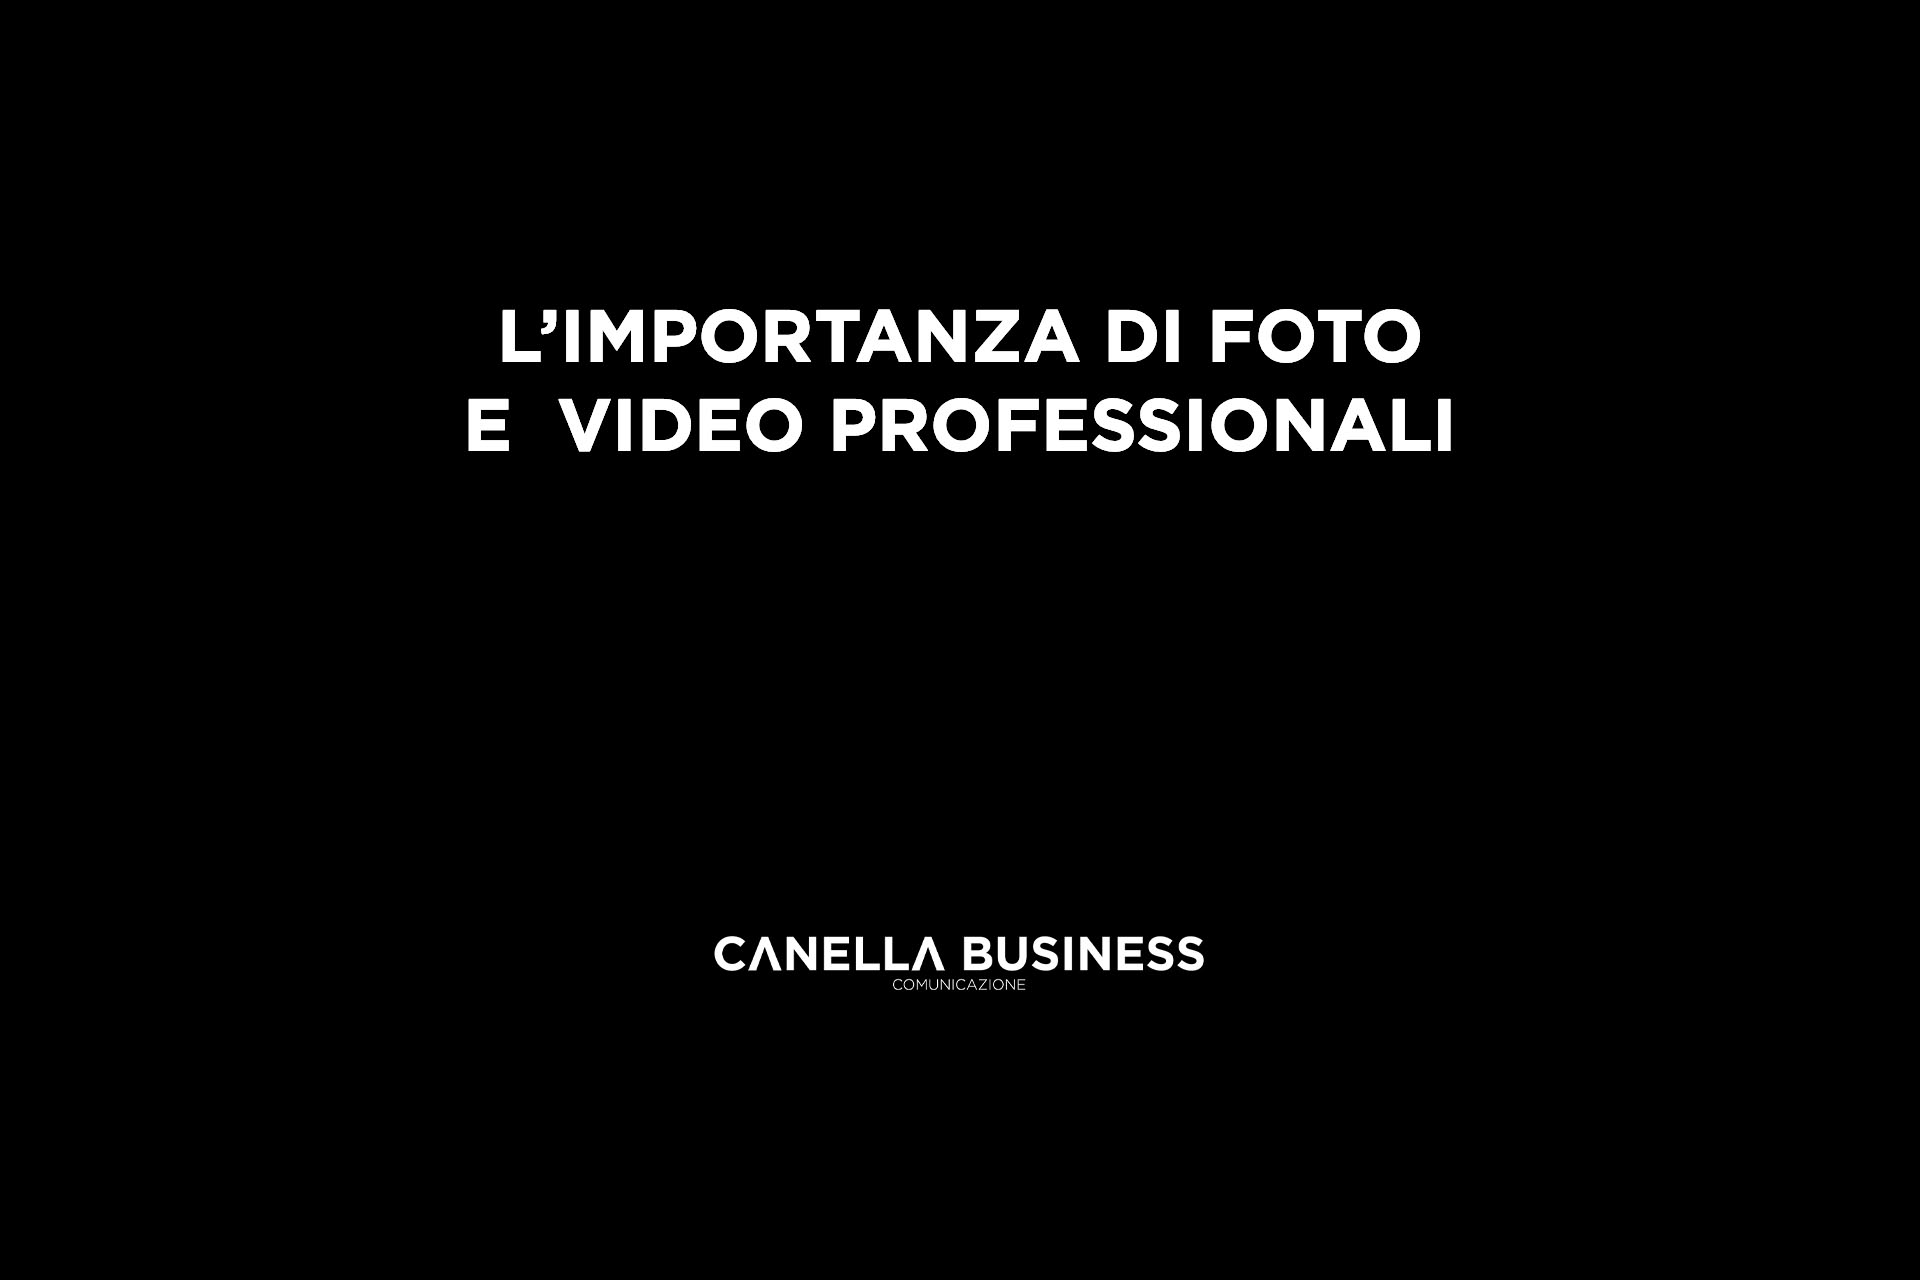 L'importanza di foto e video professionali